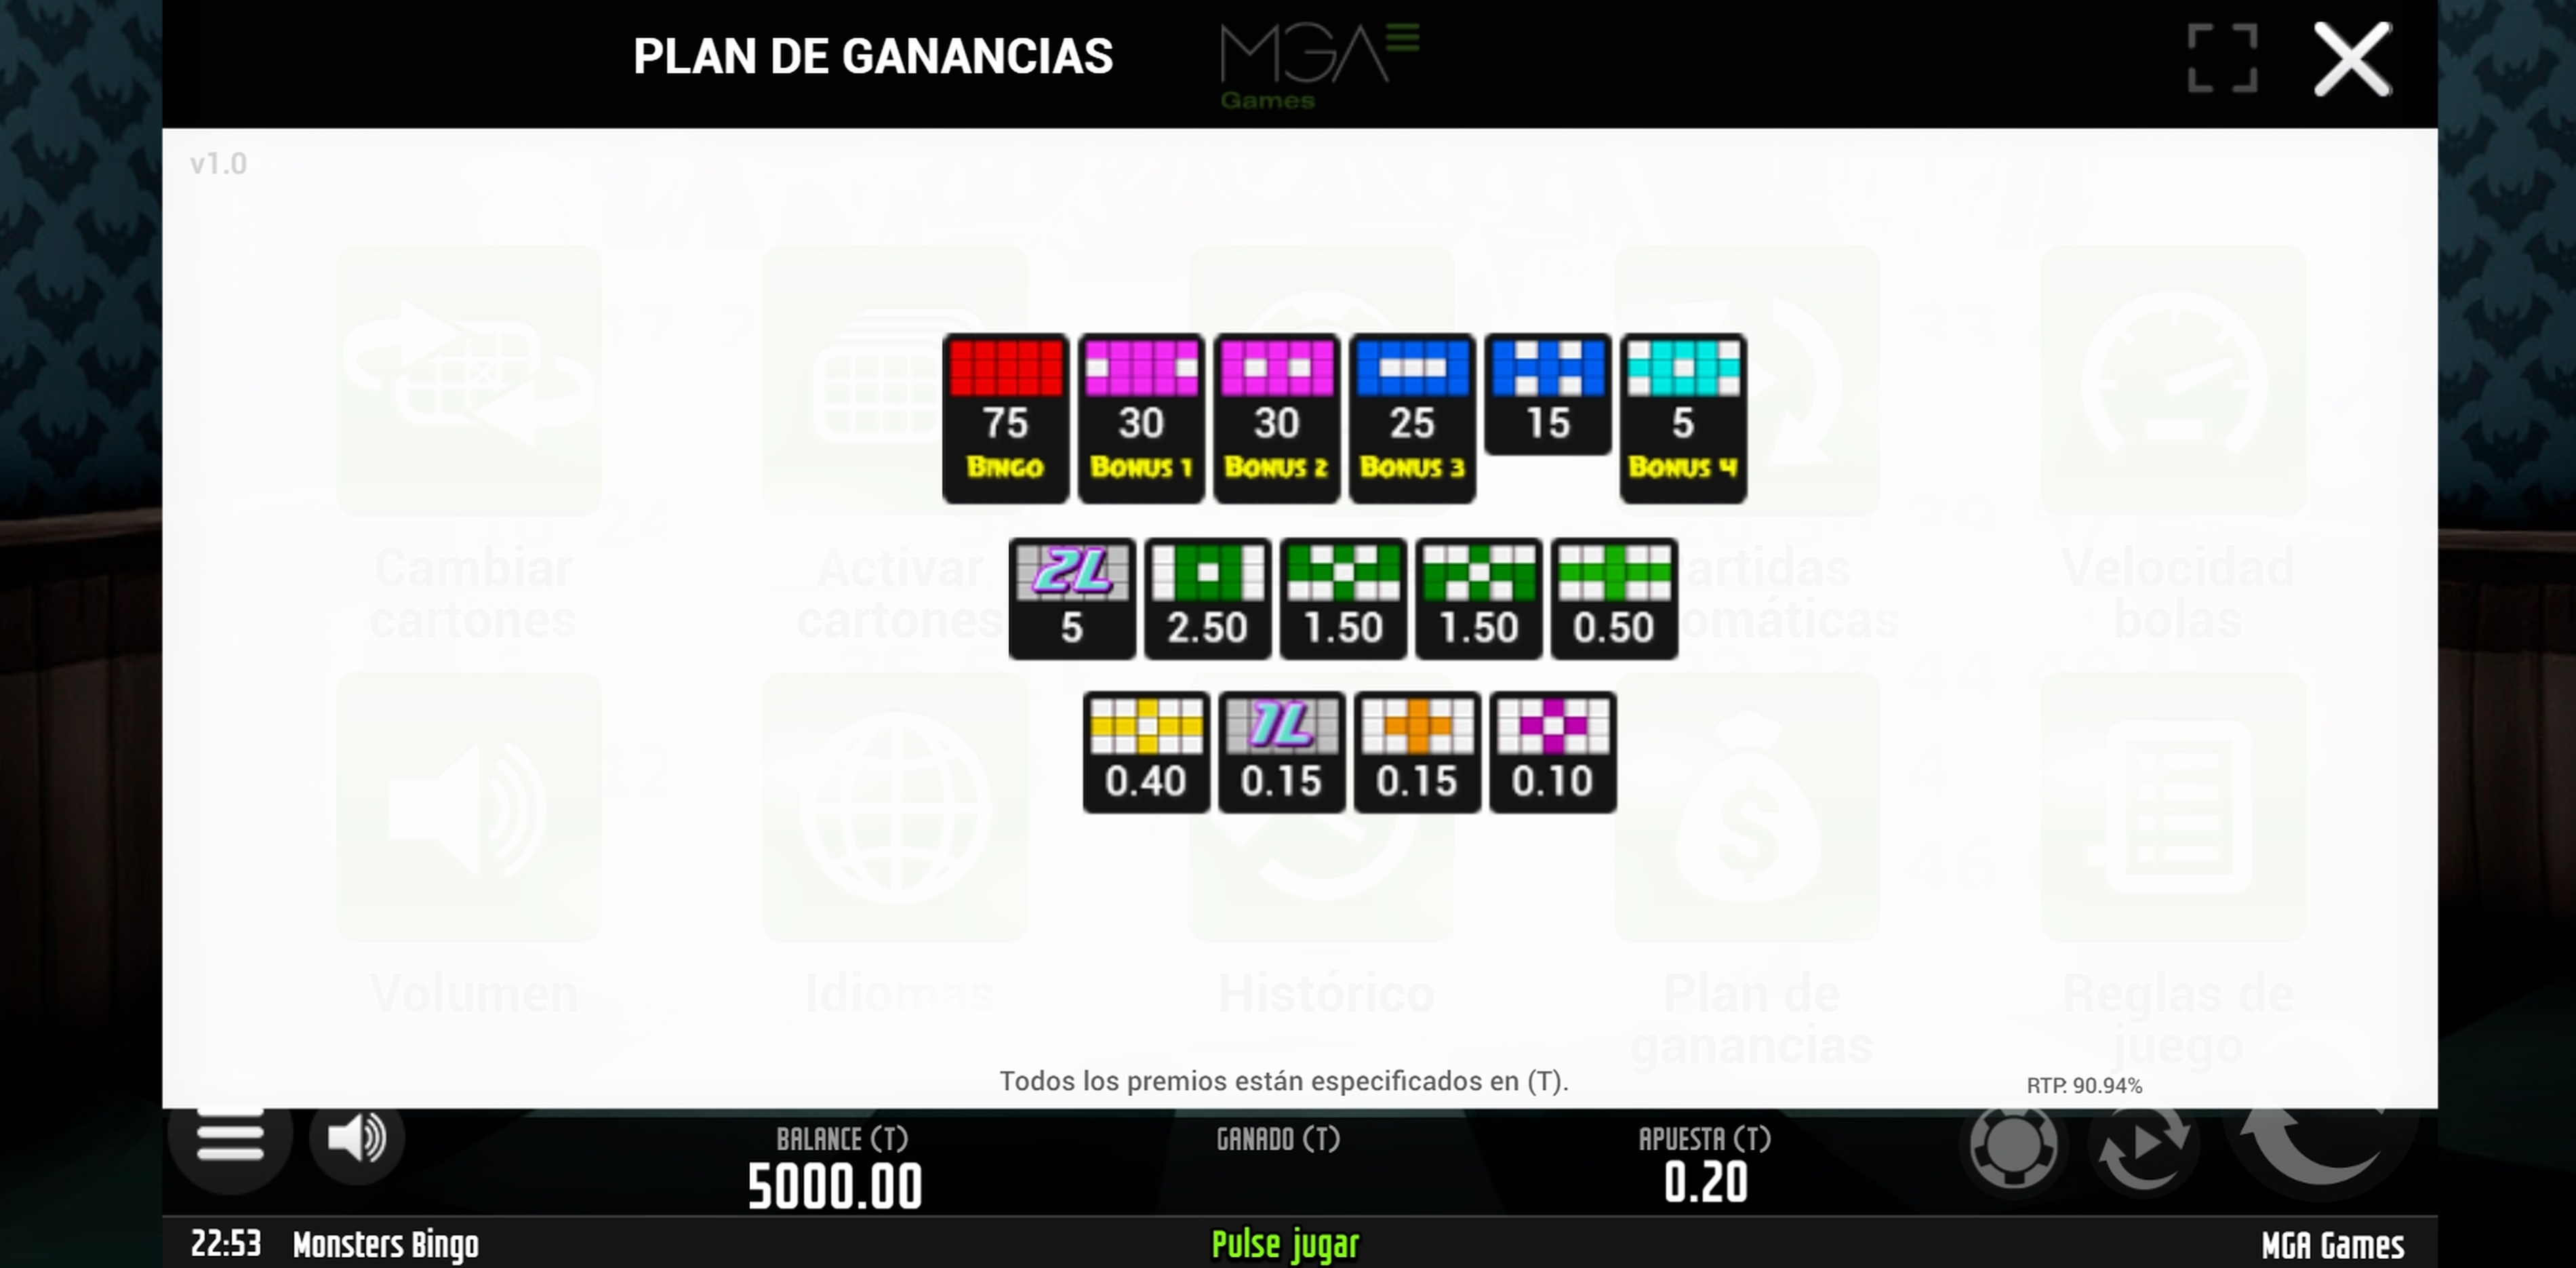 Info of Monsters Bingo Slot Game by MGA